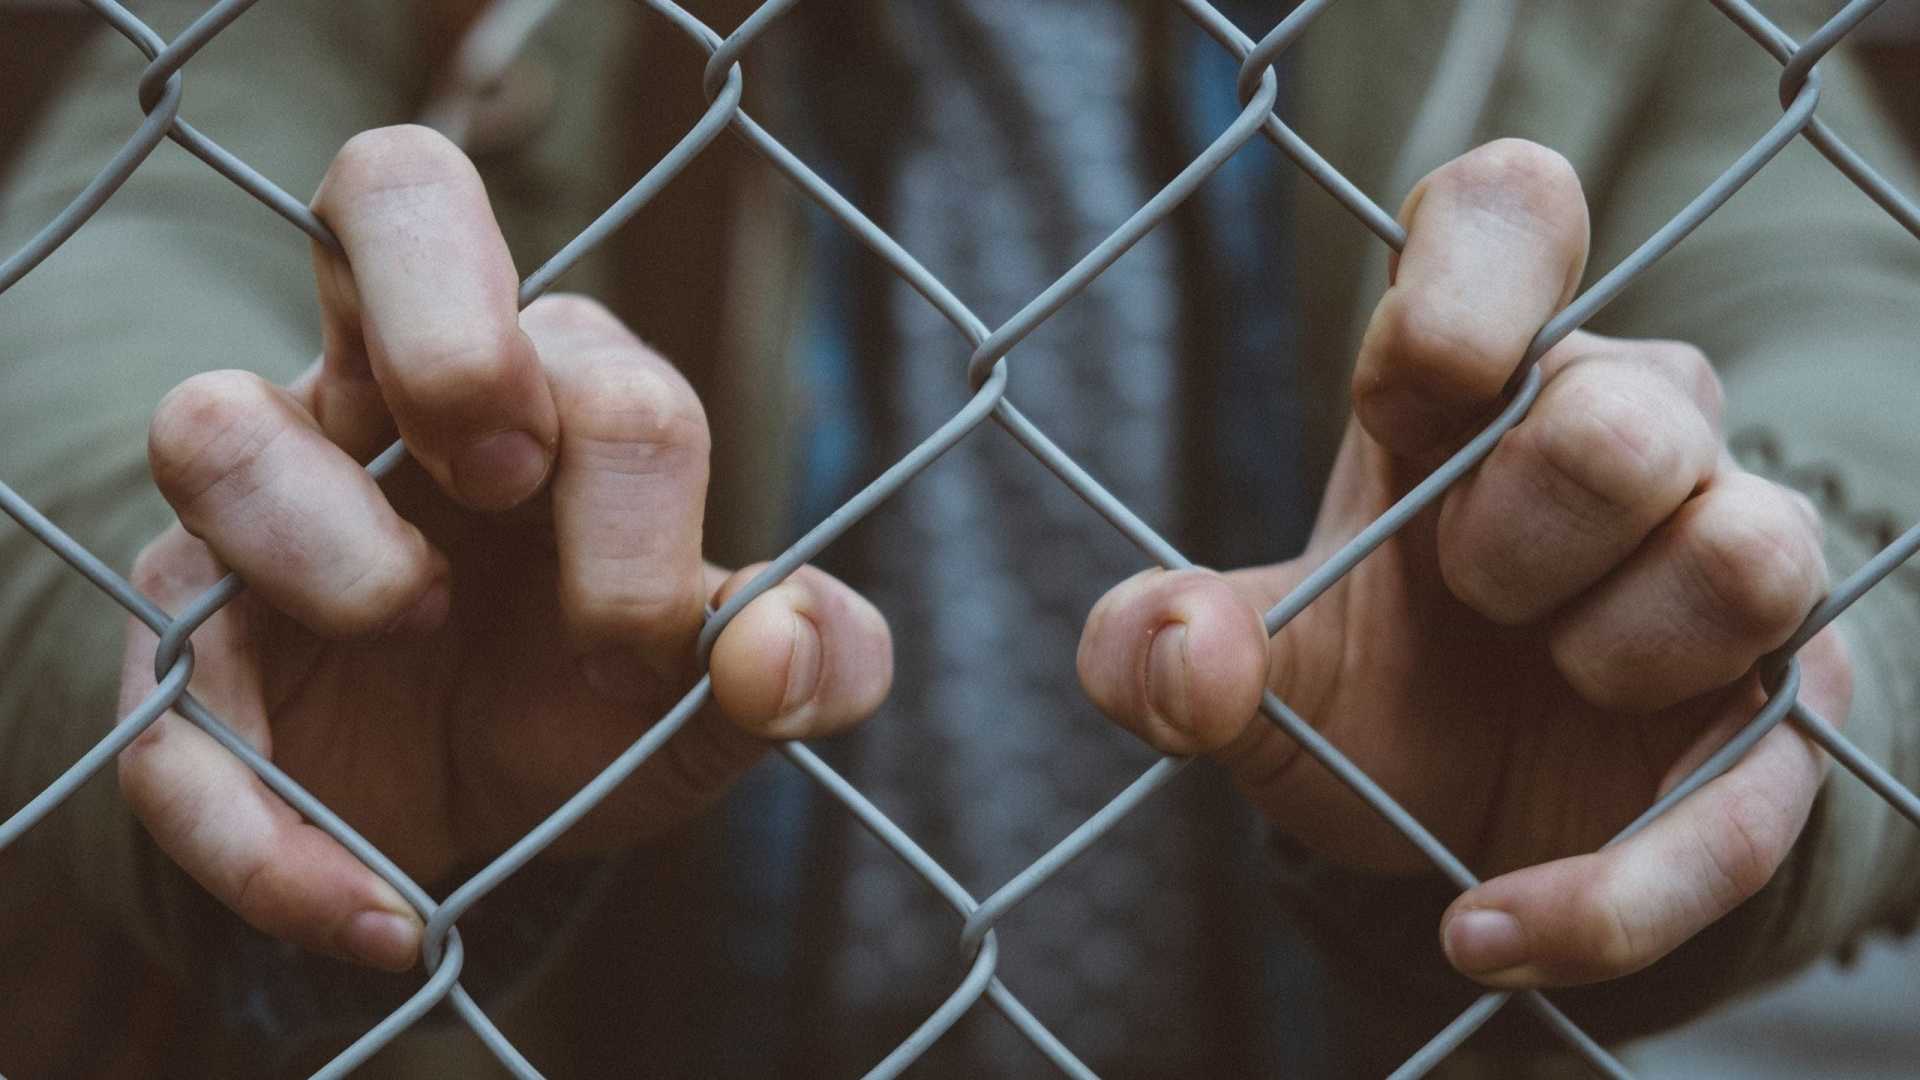 Diretor de cadeia é preso por facilitar transferência em troca de sexo